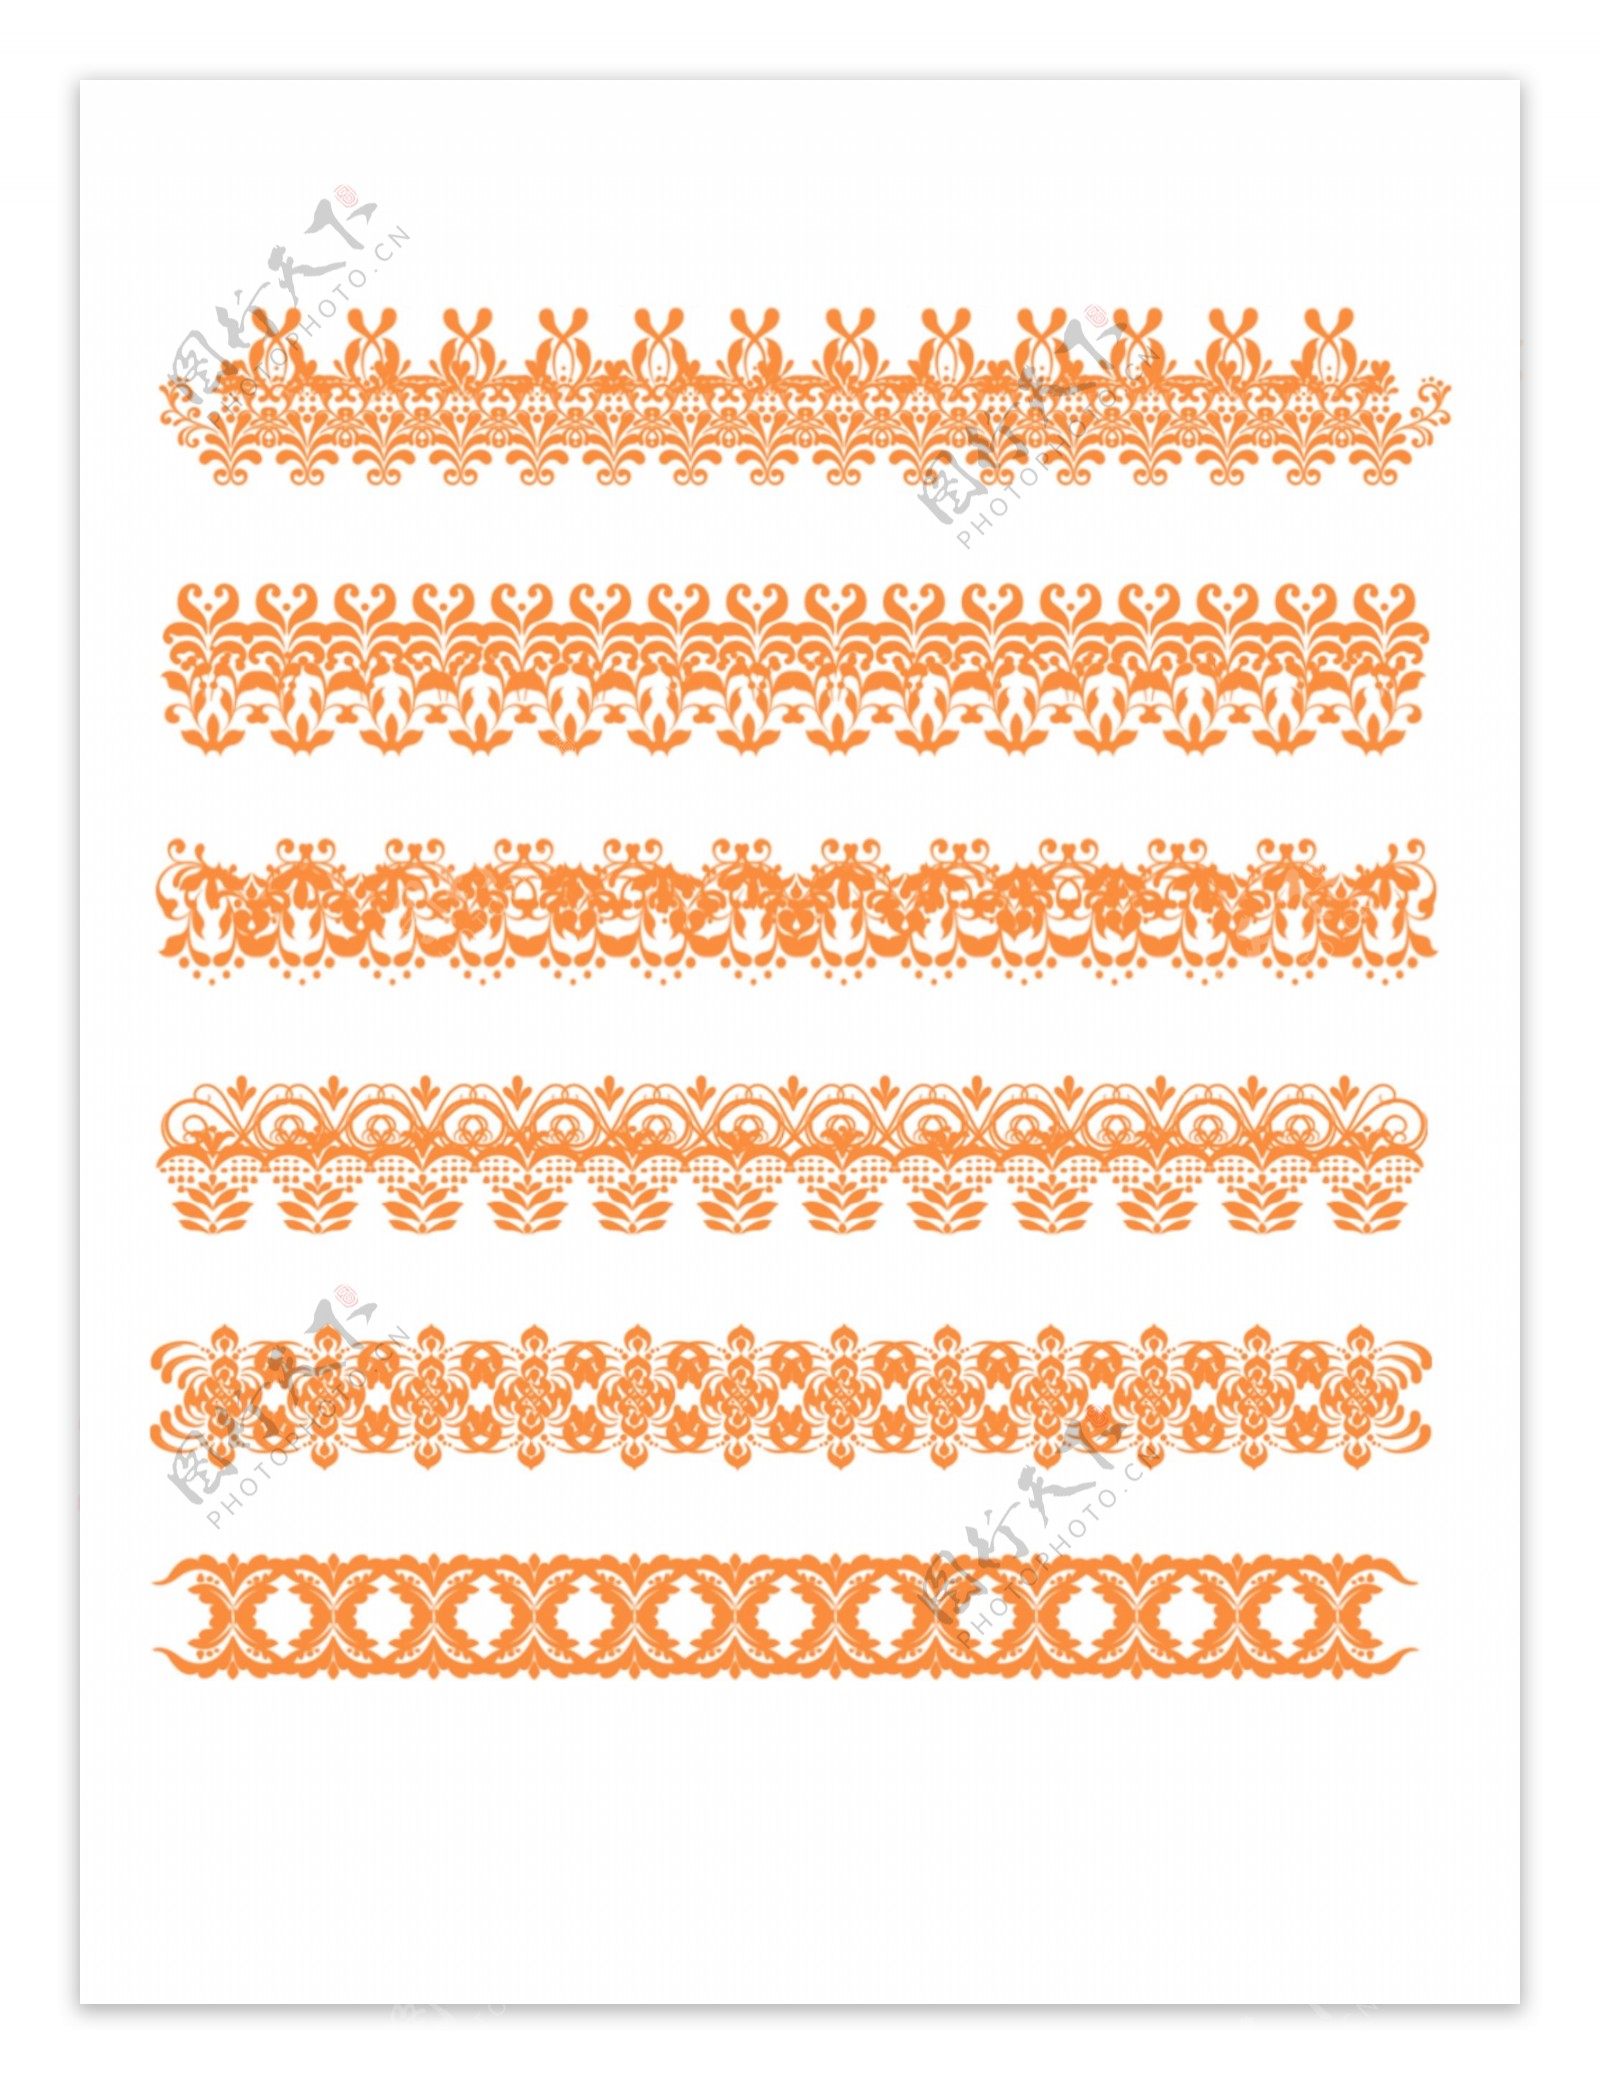 原创欧式复杂边框套图橙色可商用元素